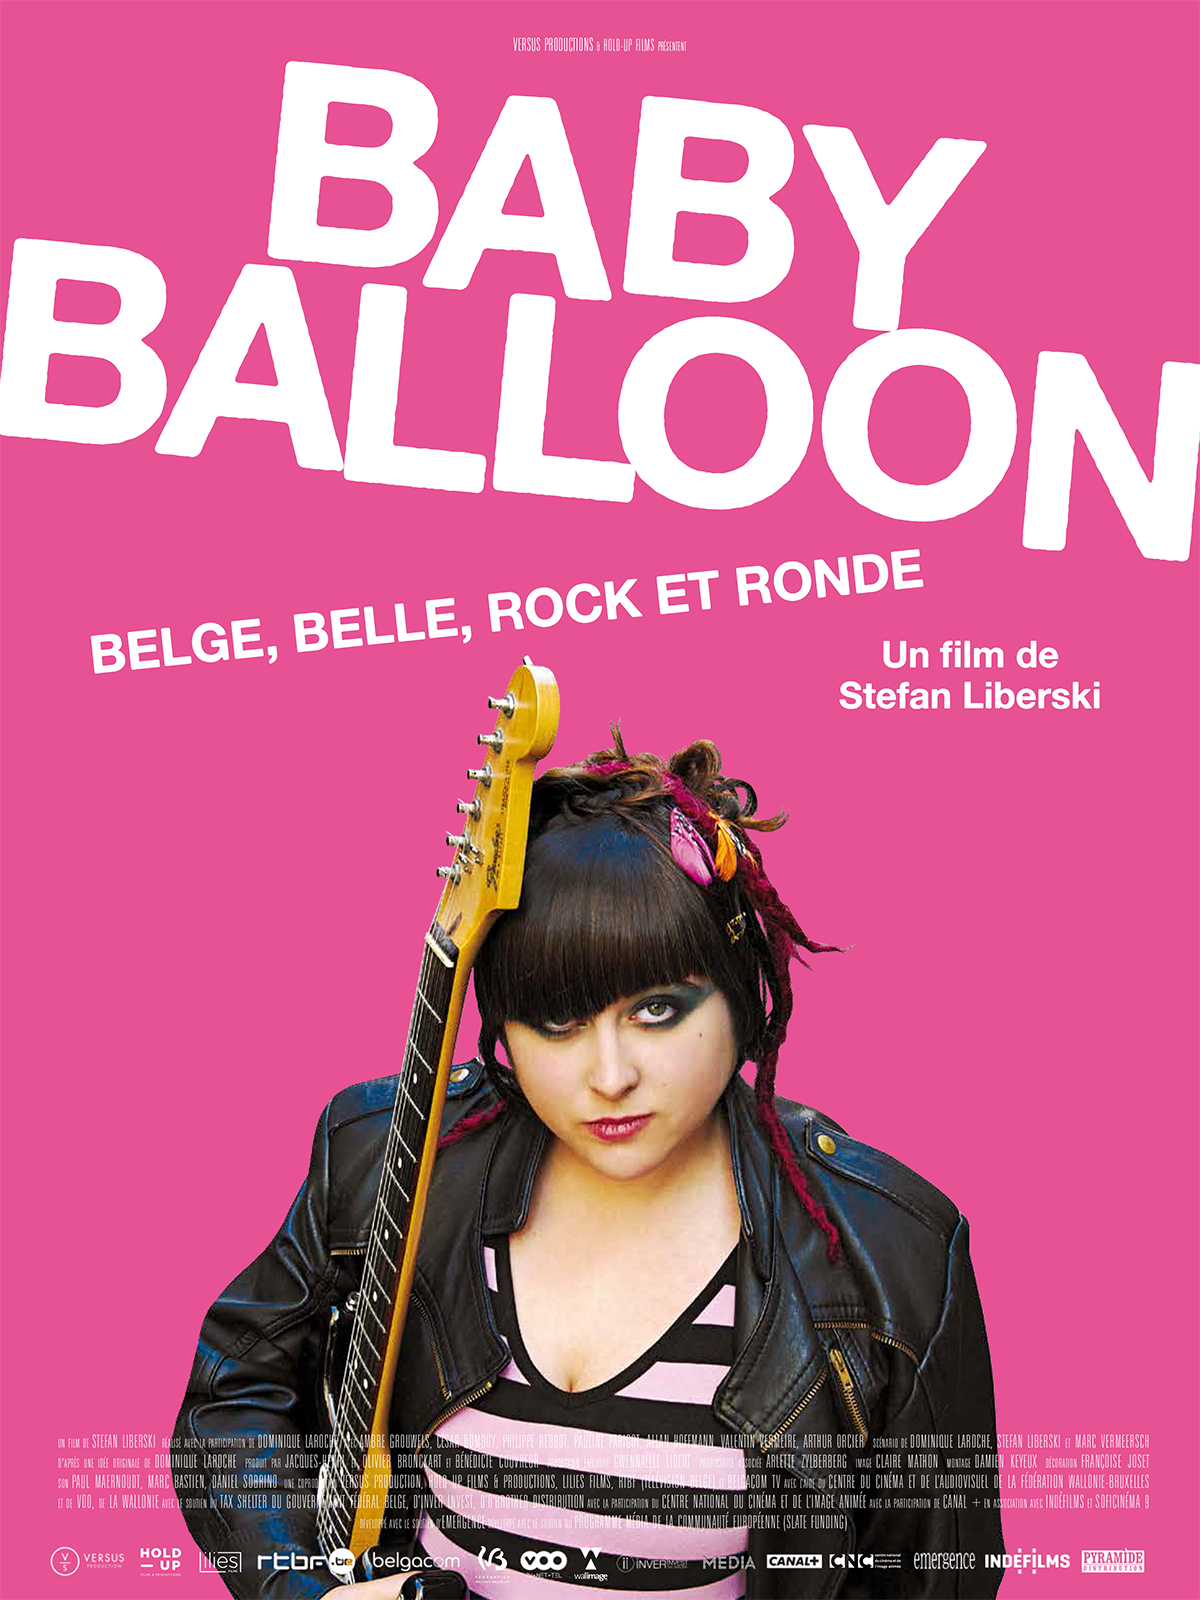 babyballoon